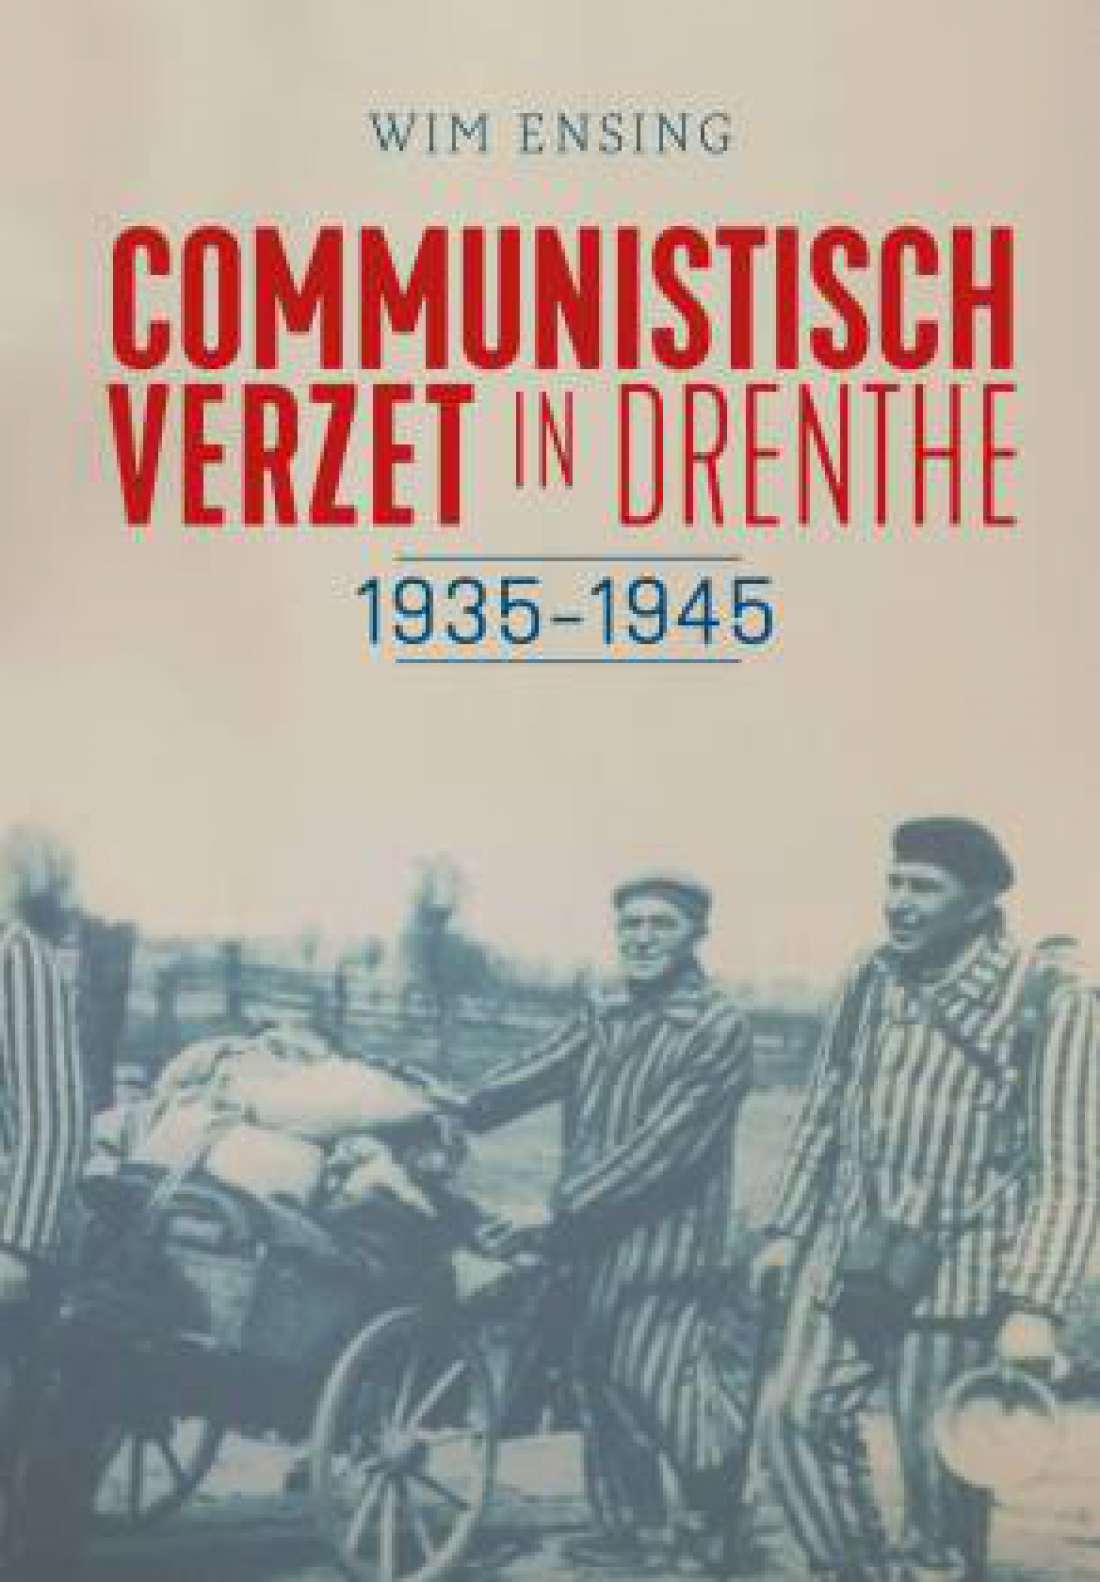 Communistisch verzet in Drenthe 1935 - 1945 Wim Ensing